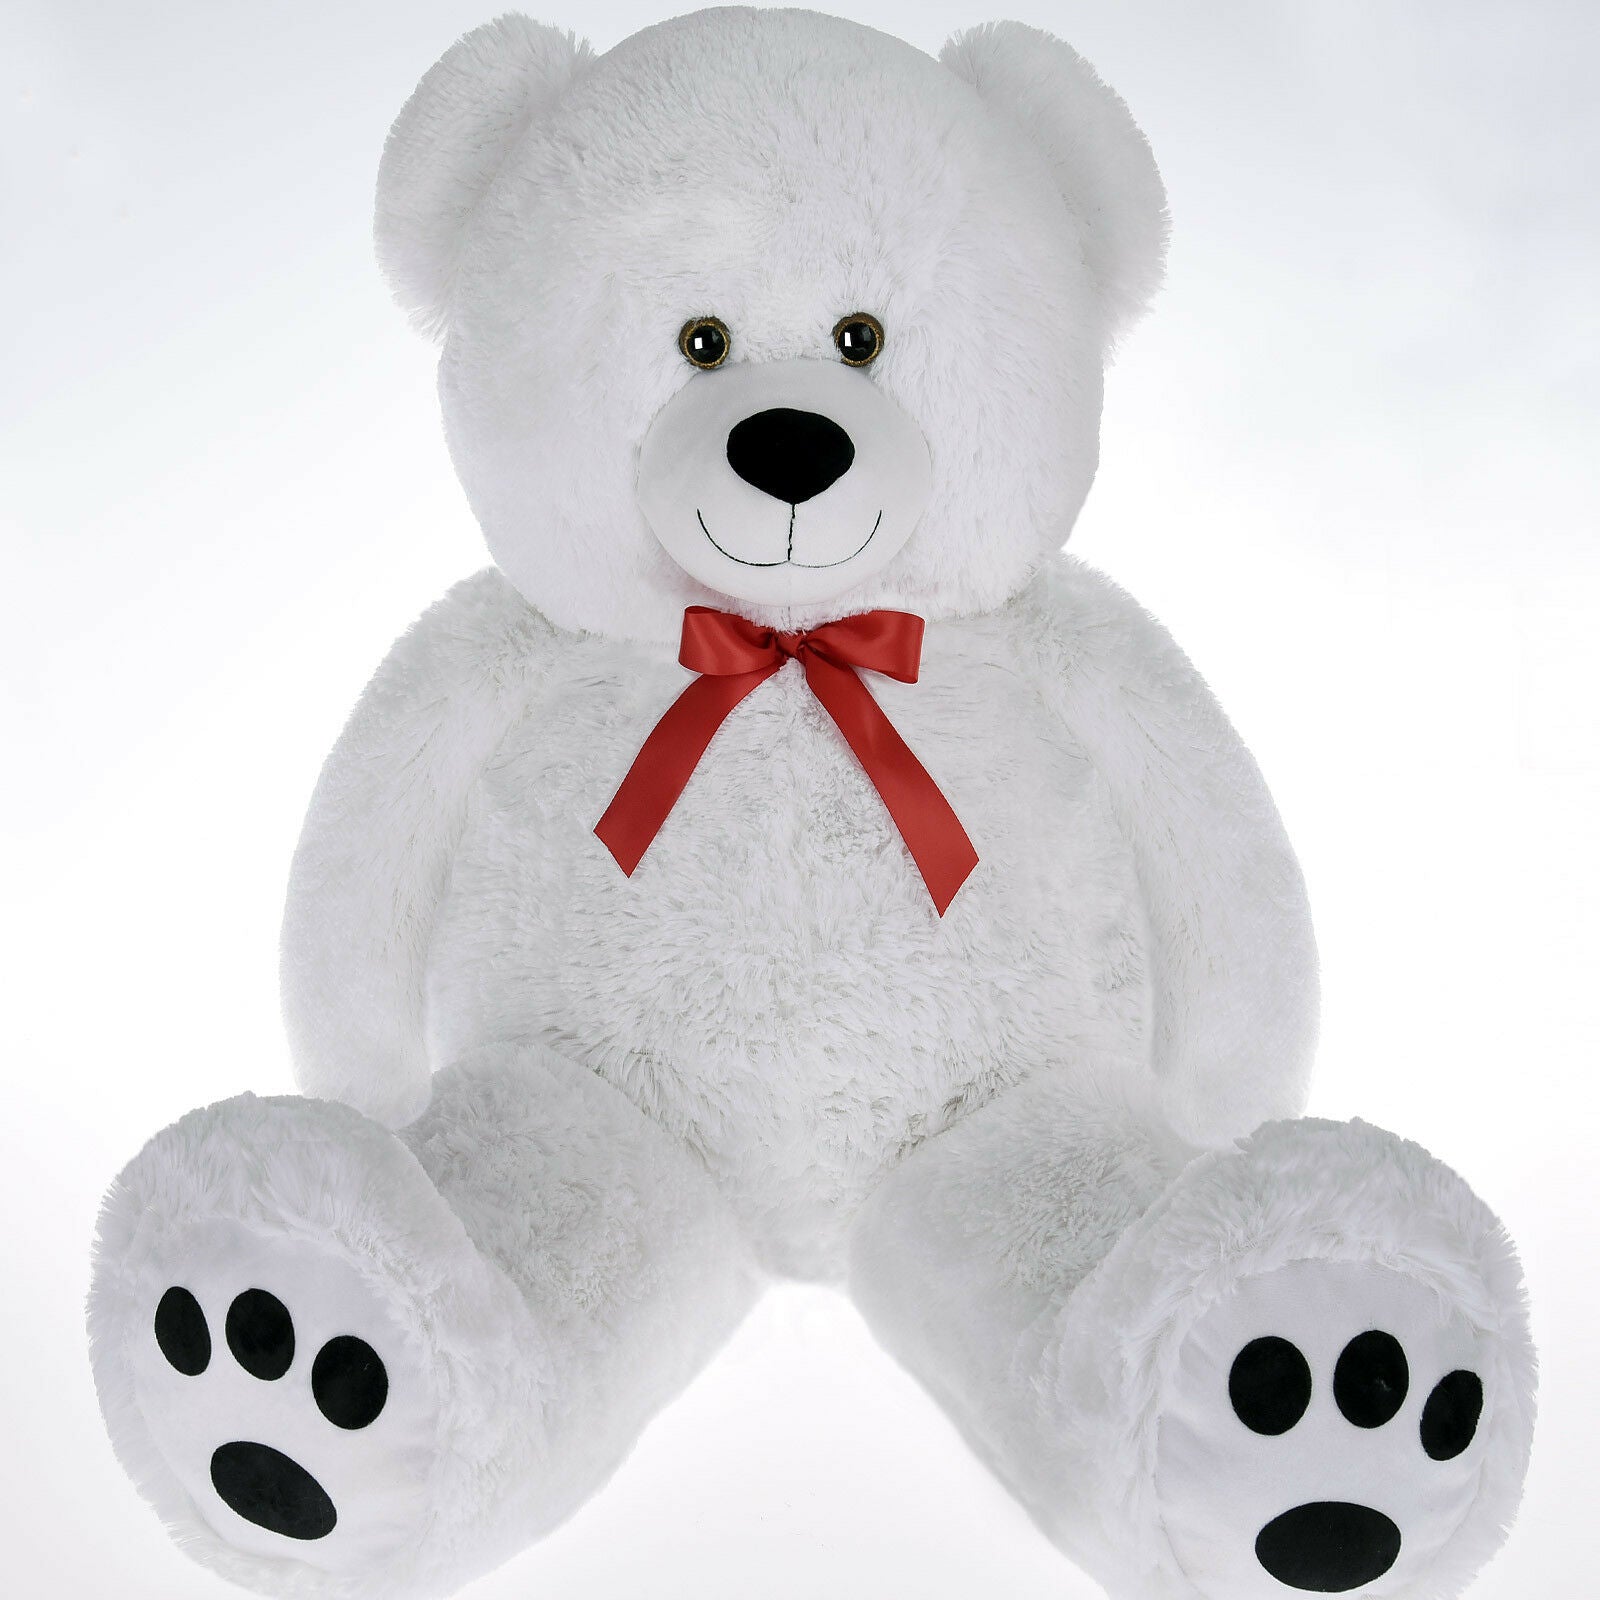 100cm teddy bear